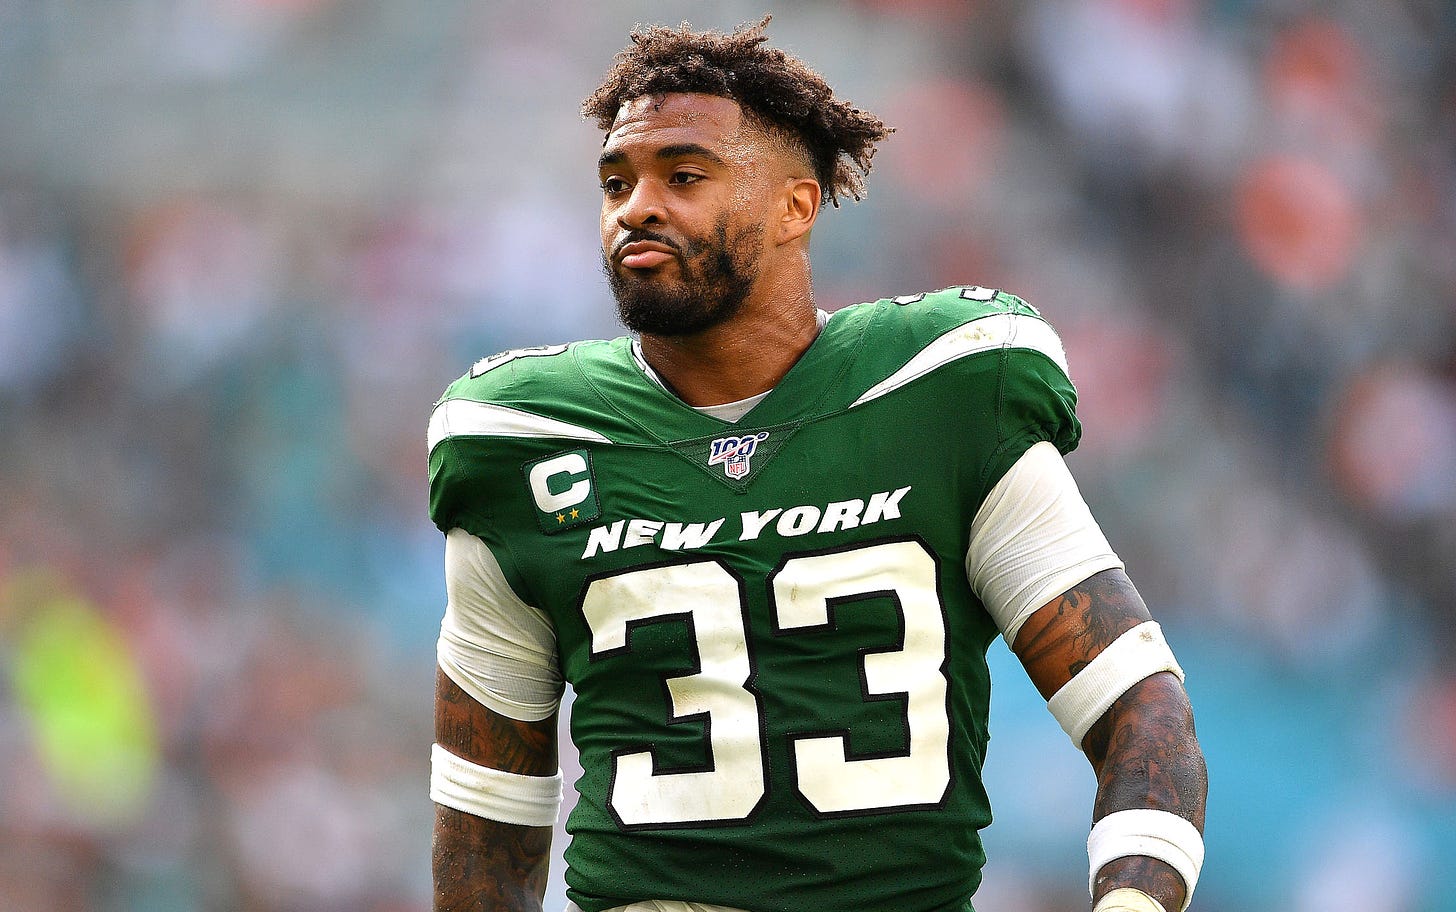 Jets fan stunned Instagram comment drew Jamal Adams' ire